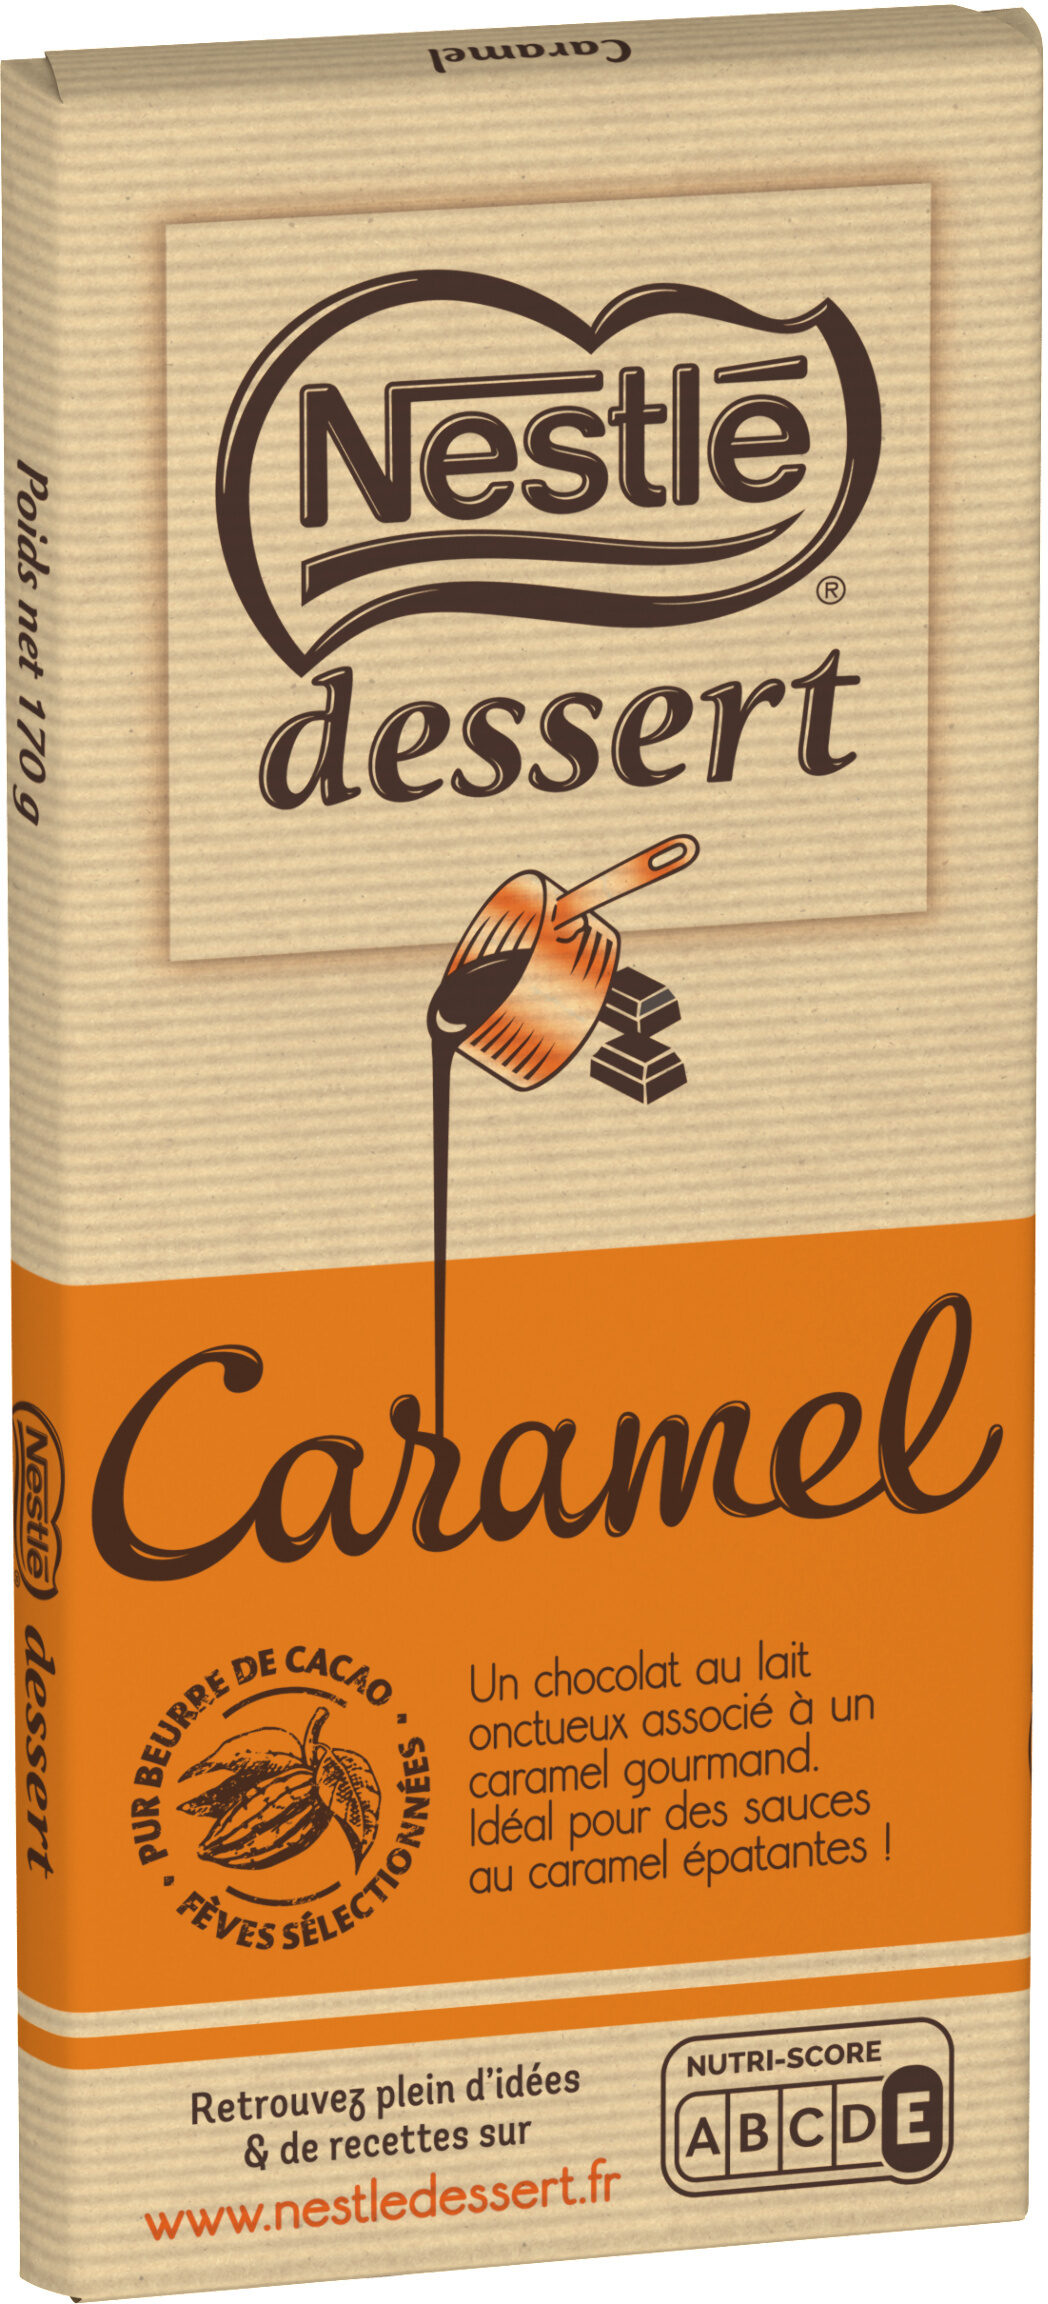 NESTLE DESSERT Caramel 170g - Produit - fr